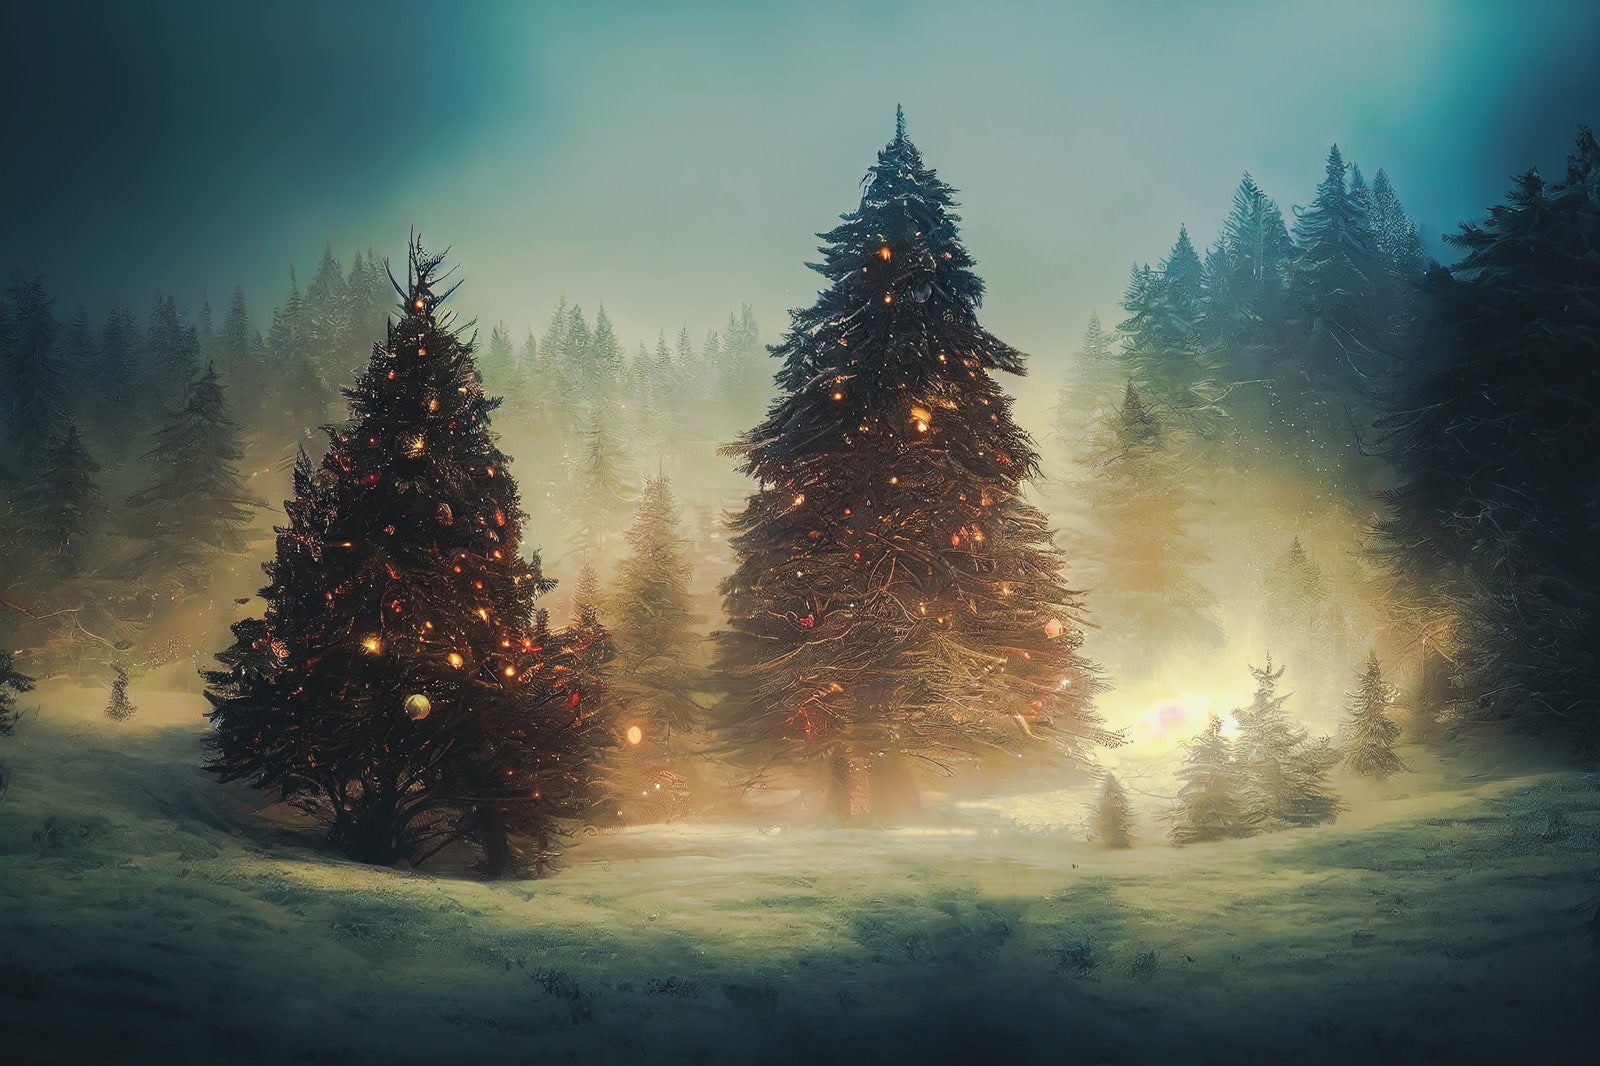 「雪深い森の中のクリスマスツリー」の写真